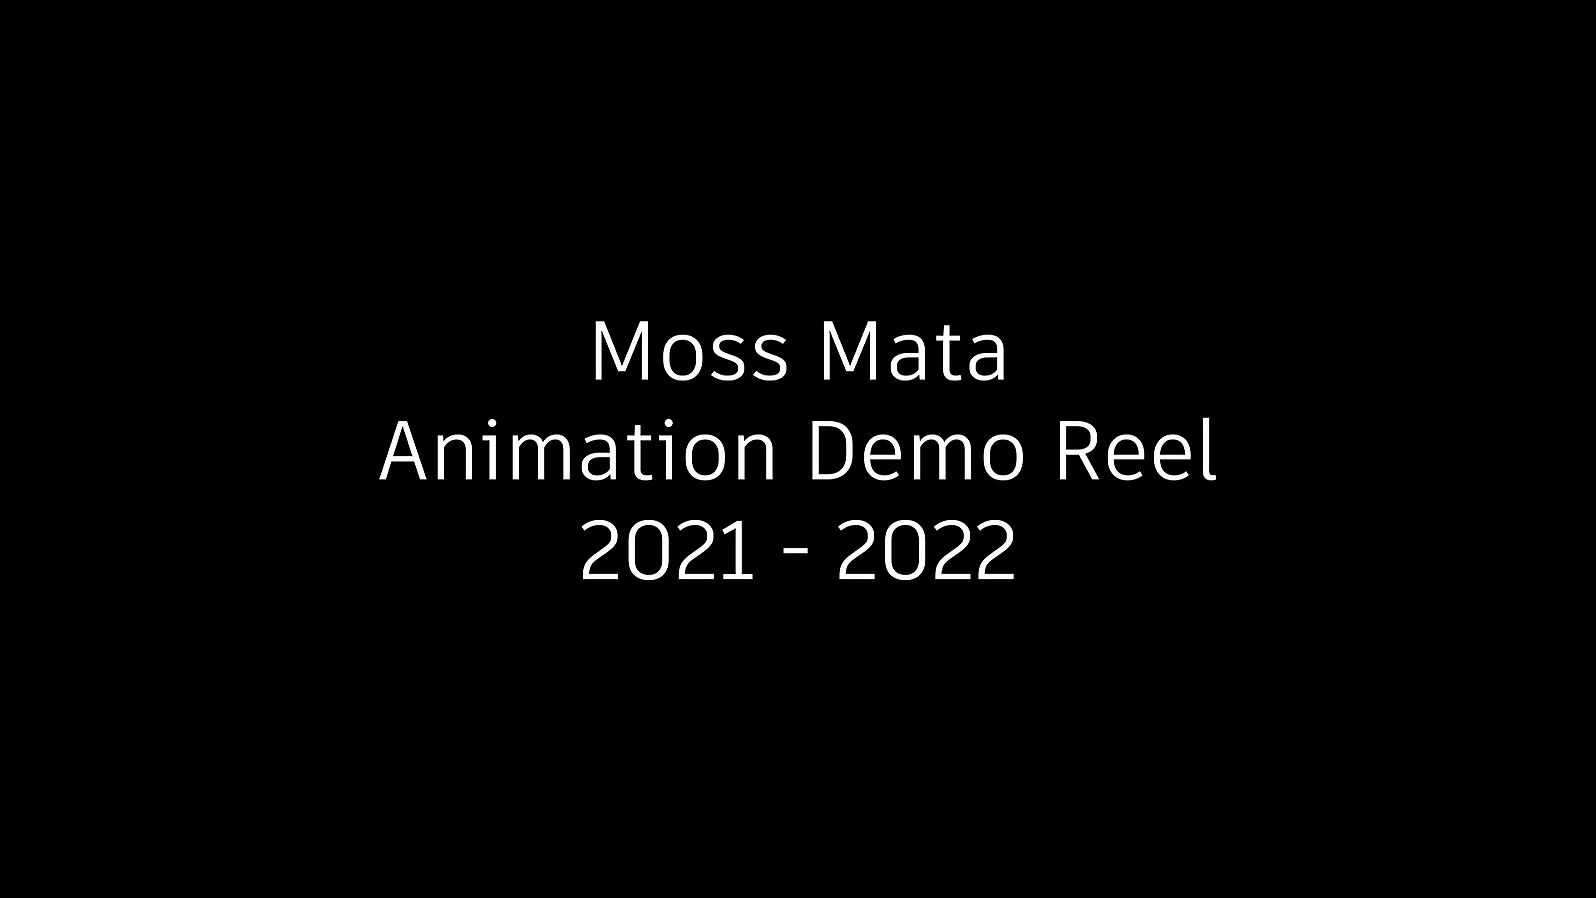 Moss Mata Animation Demo Reel 2021 - 2022